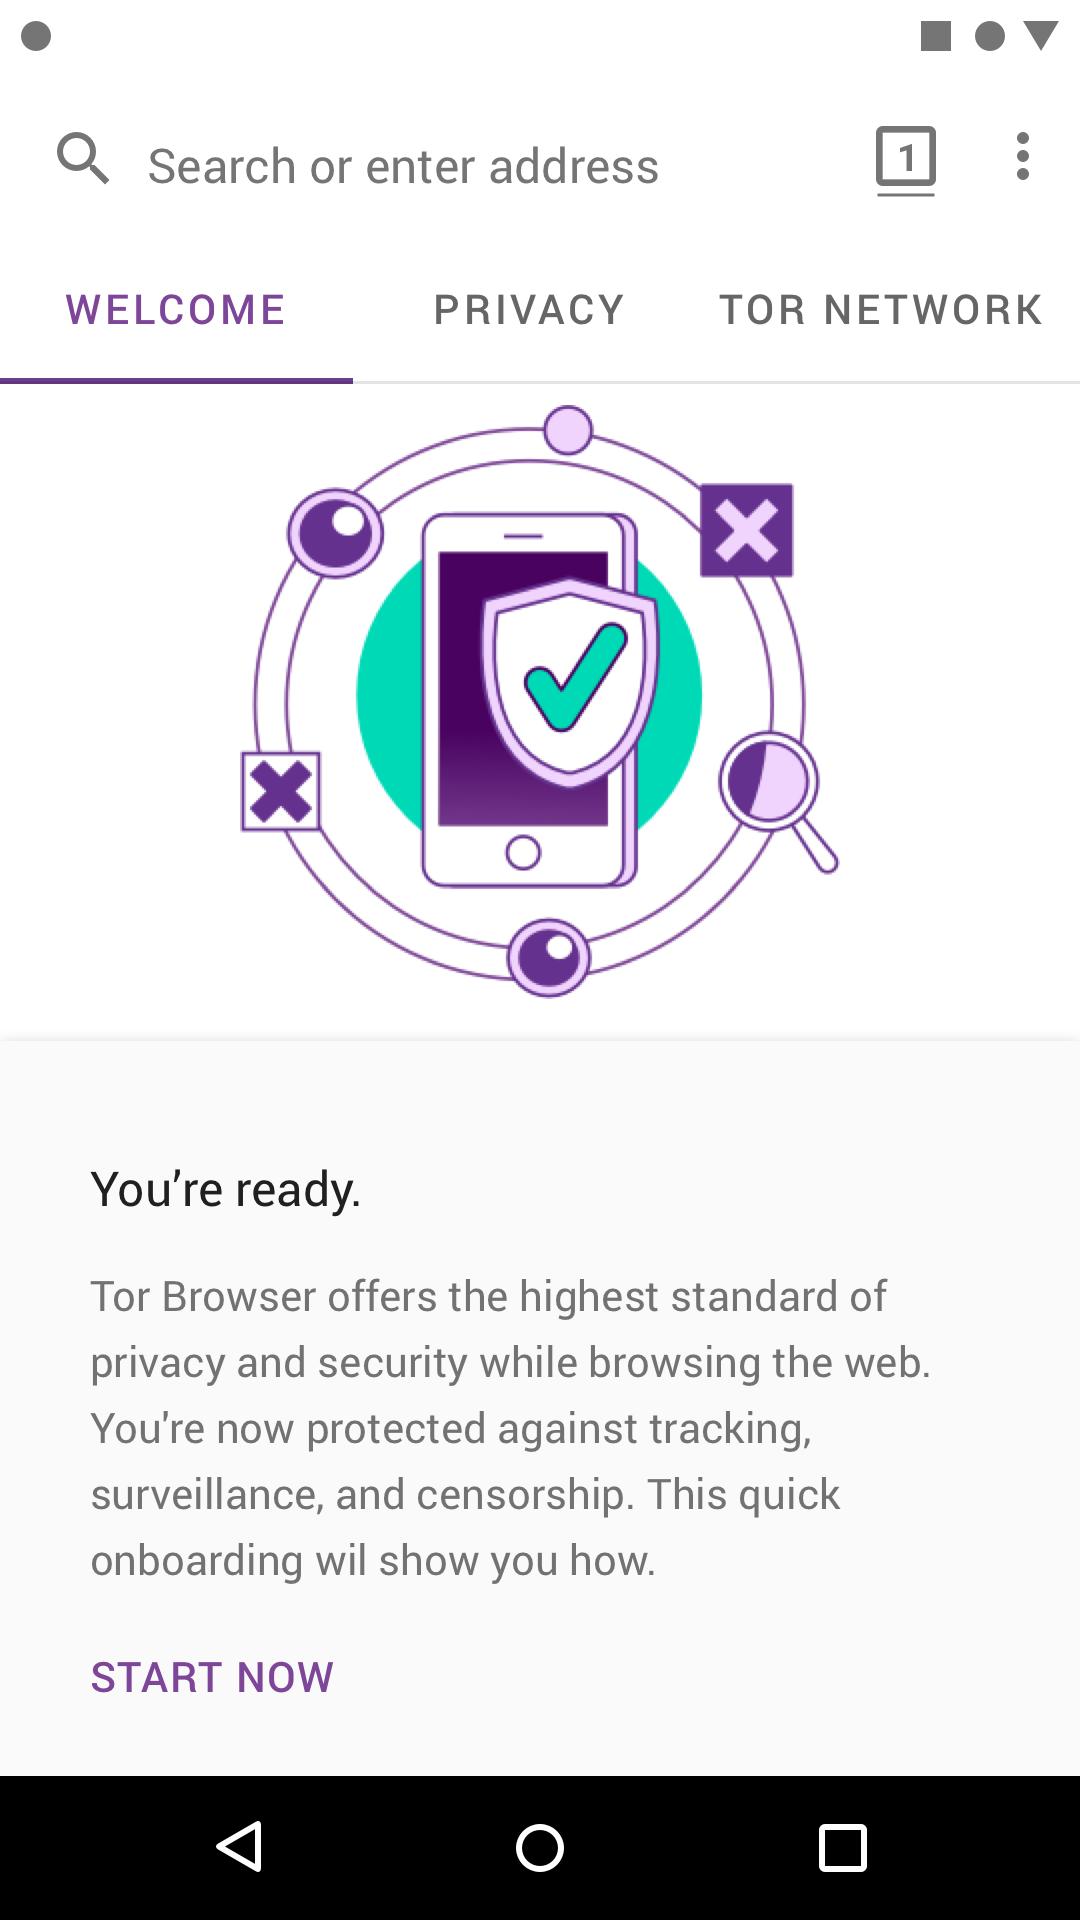 Tor browser скачать бесплатно для андроид на русском языке hyrda тор браузер портабл скачать бесплатно на русском hudra